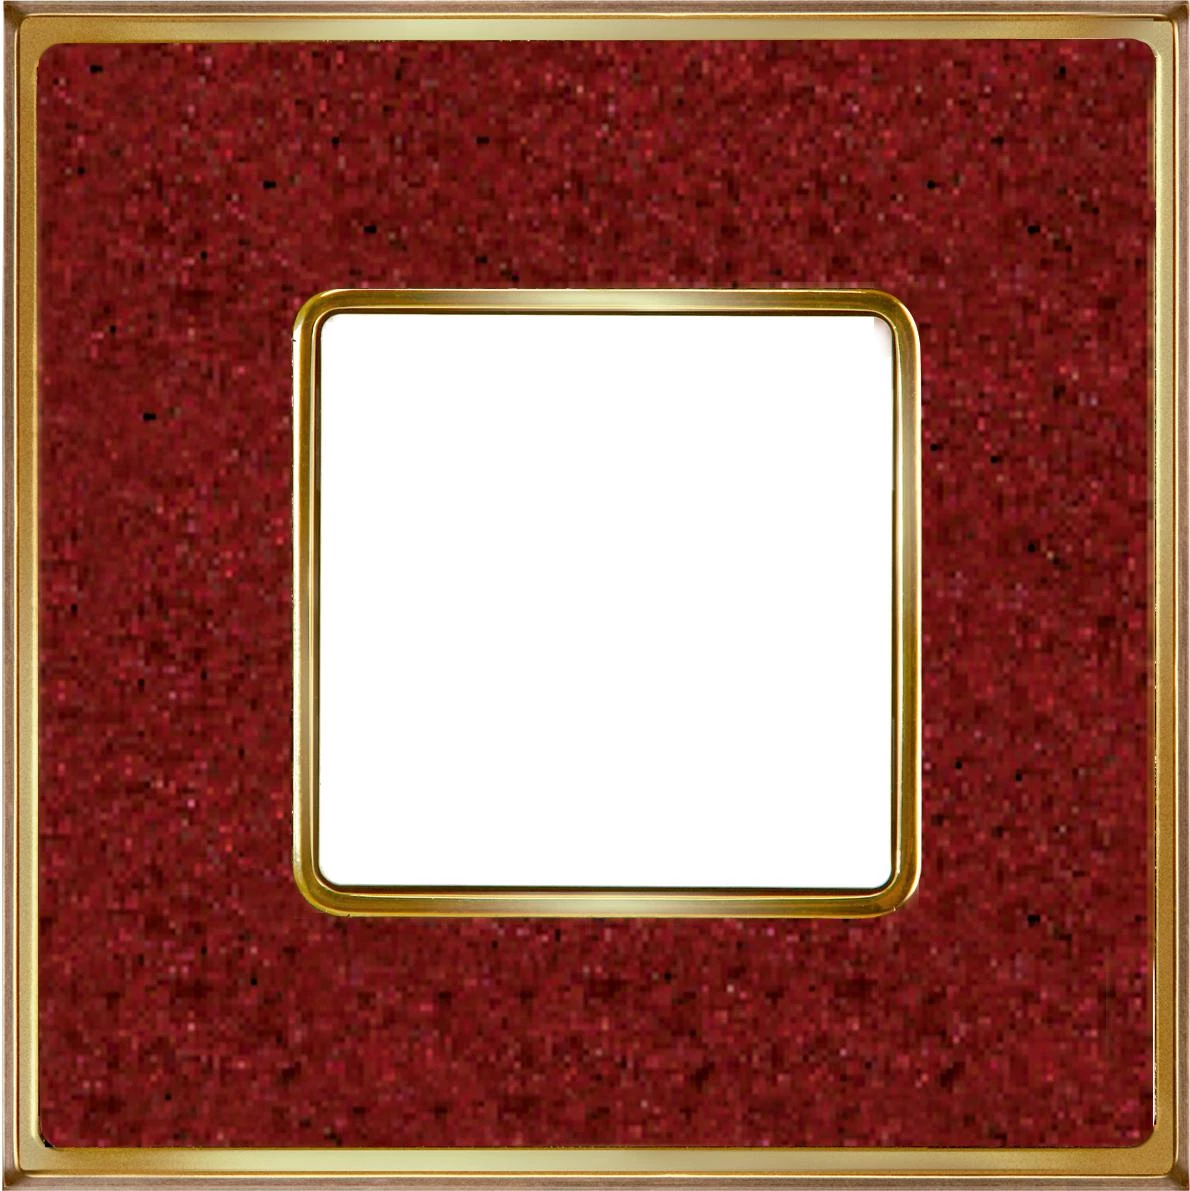  артикул FD01331PROB название Рамка 1-ая (одинарная), цвет Красный кориан/Светлое золото, VINTAGE CORINTO, Fede